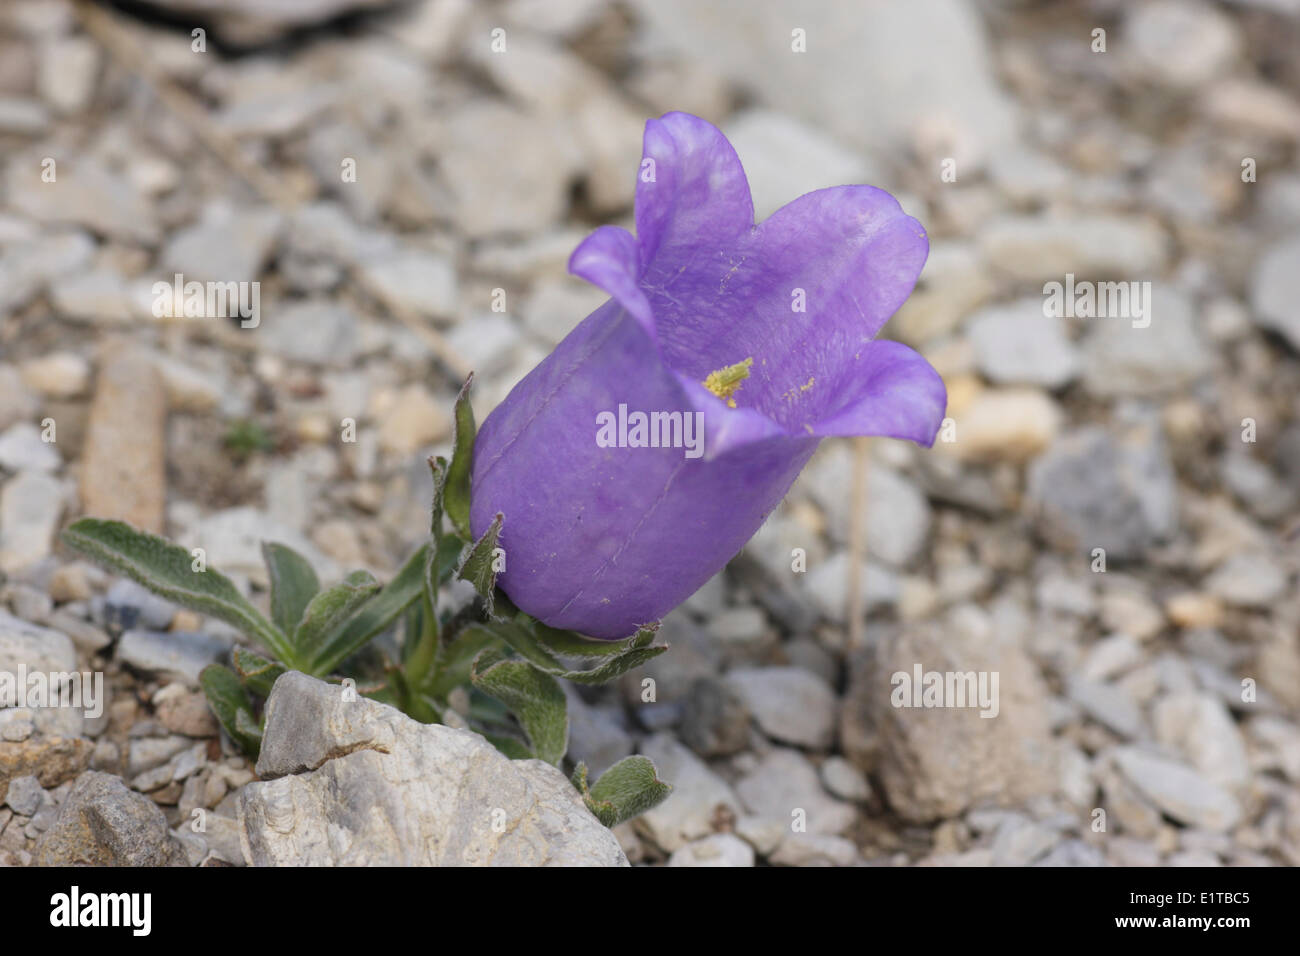 Campanule alpestre endémique dans le sud-ouest de plantes des Alpes, il n'est pas basse grande fleur qui peut atteindre 4 cm de longueur ils trouvés Banque D'Images